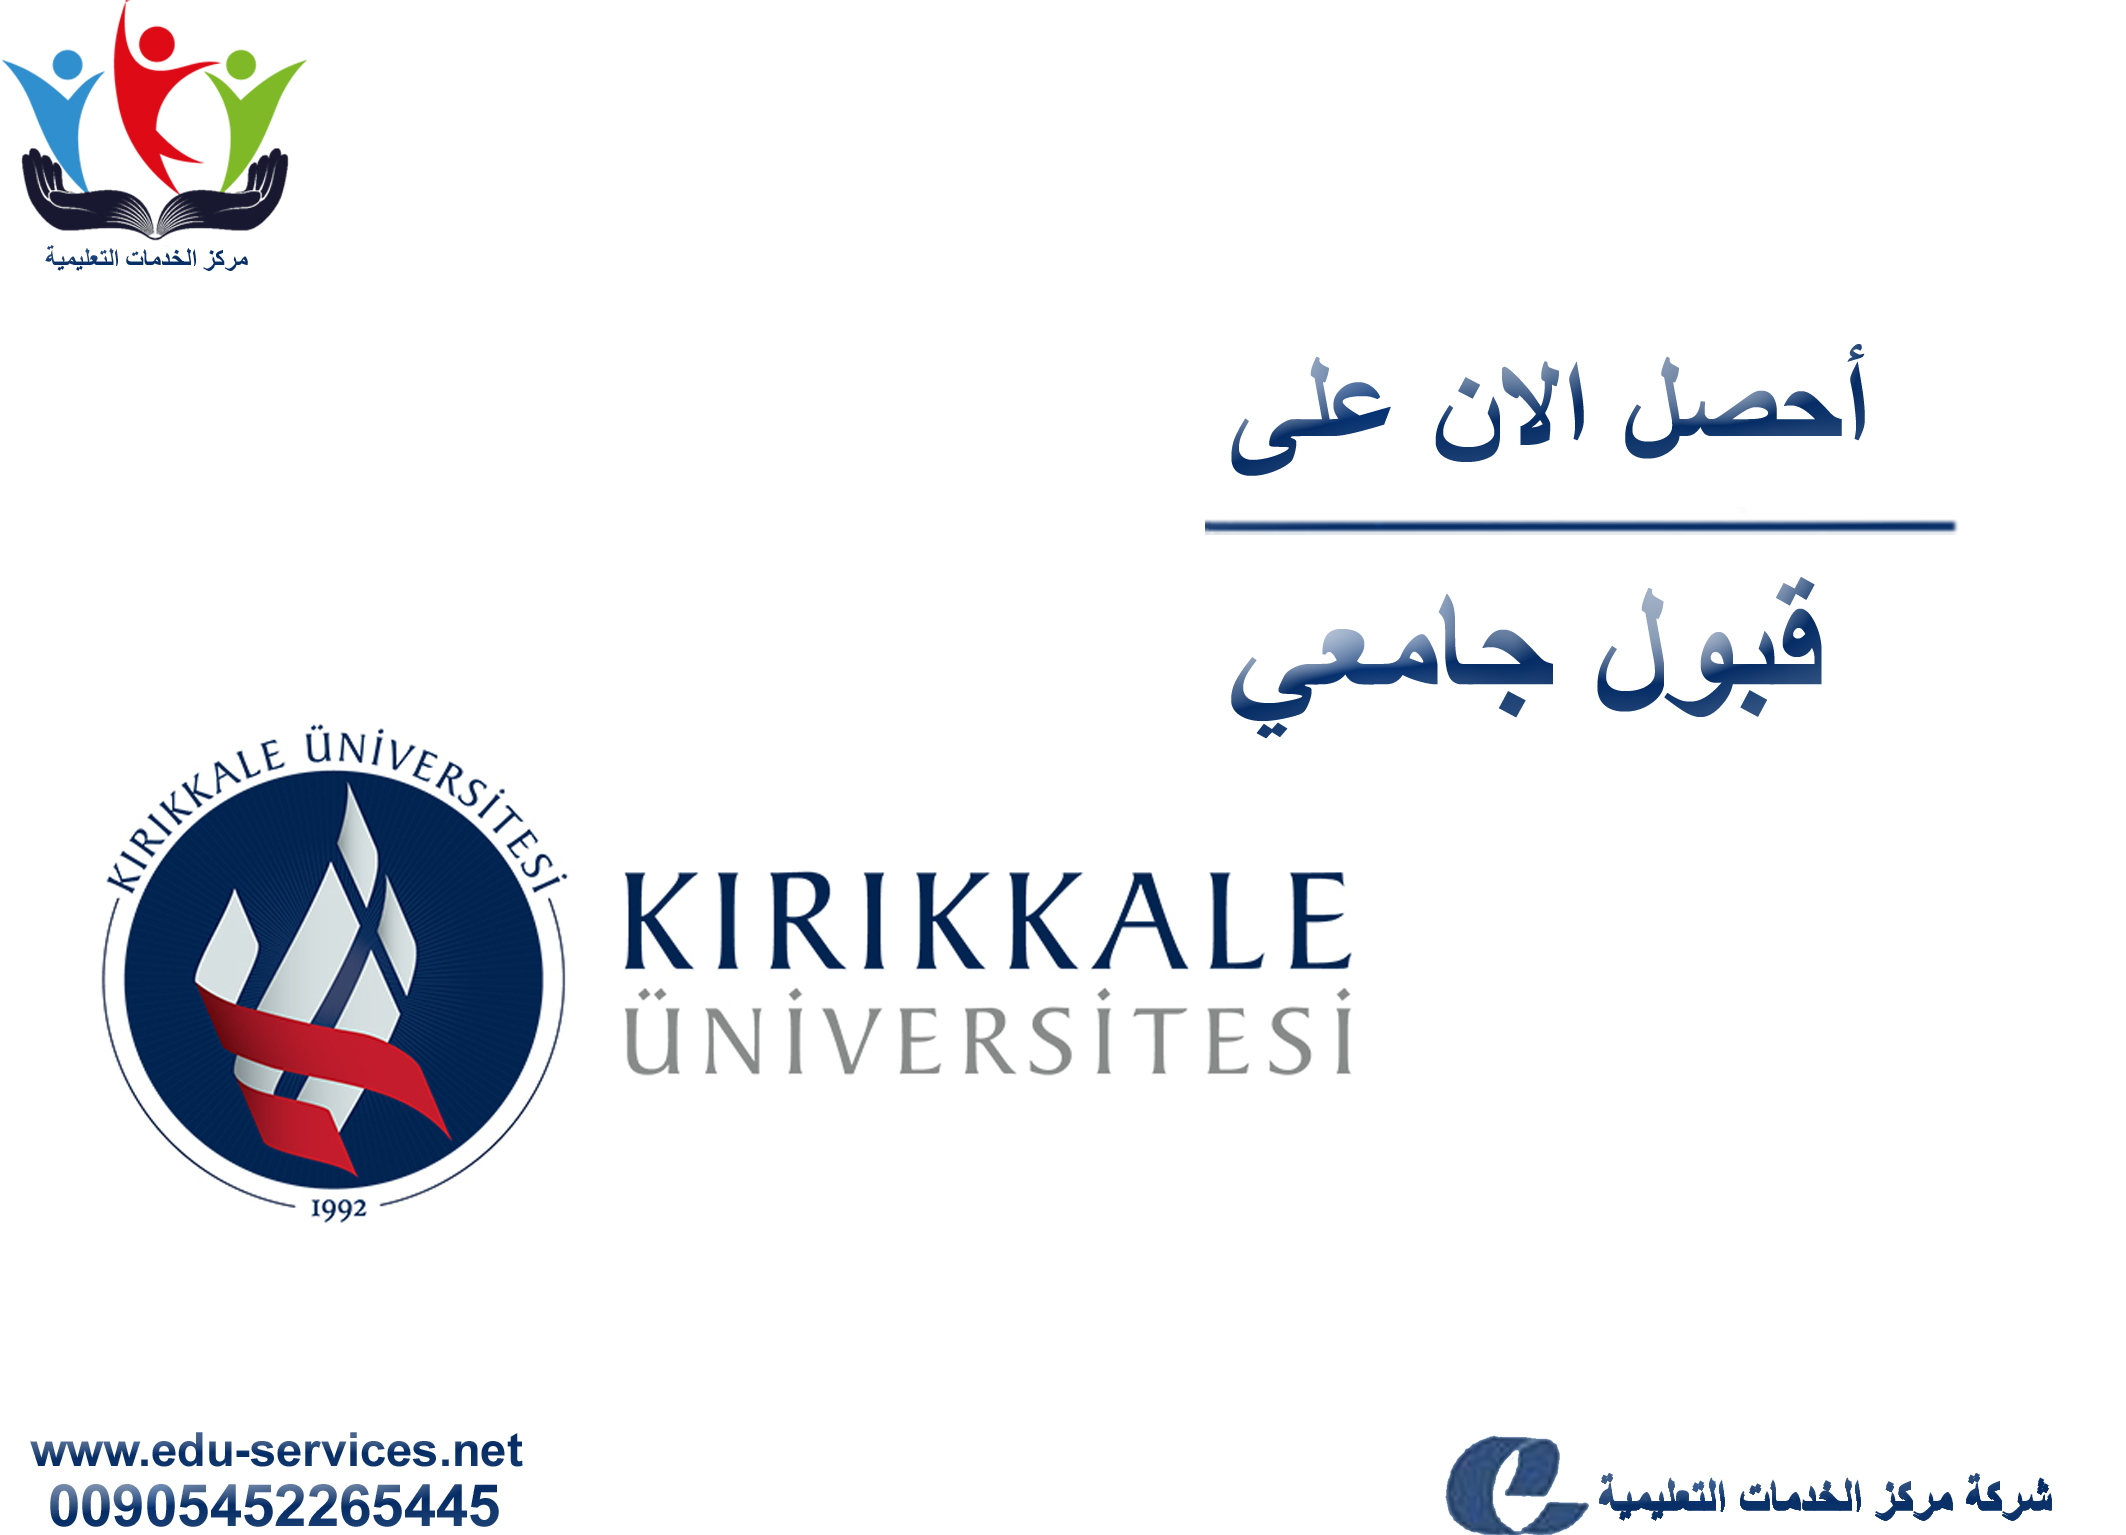 افتتاح التسجيل في جامعة كيرك كاله للعام 2018-2019